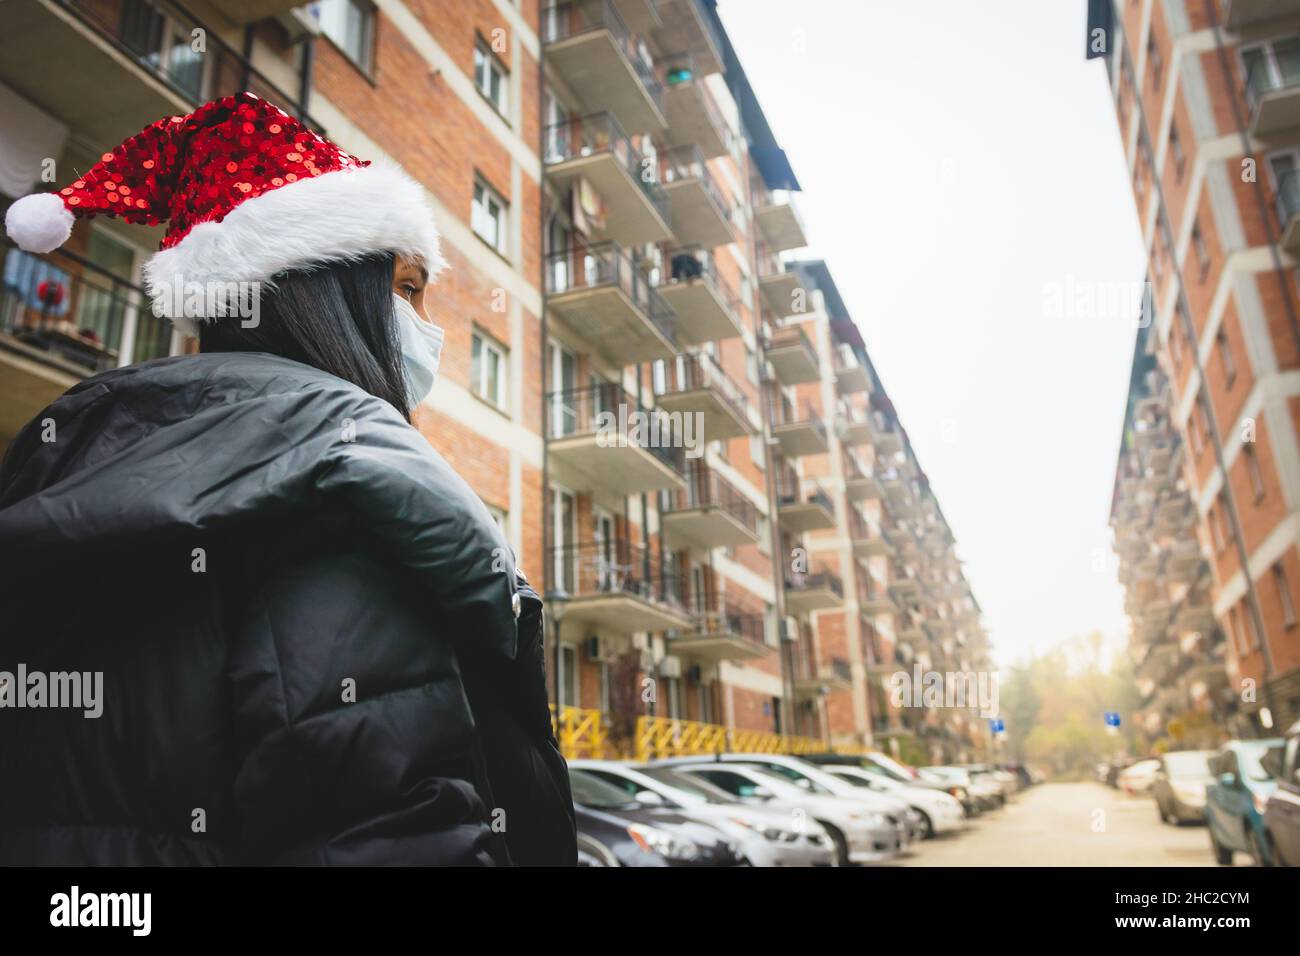 Donna in vacanza stagione guarda a destra con vista sulla strada e case sullo sfondo. Natale a casa in quarantena e coprifuoco a Natale. Foto Stock